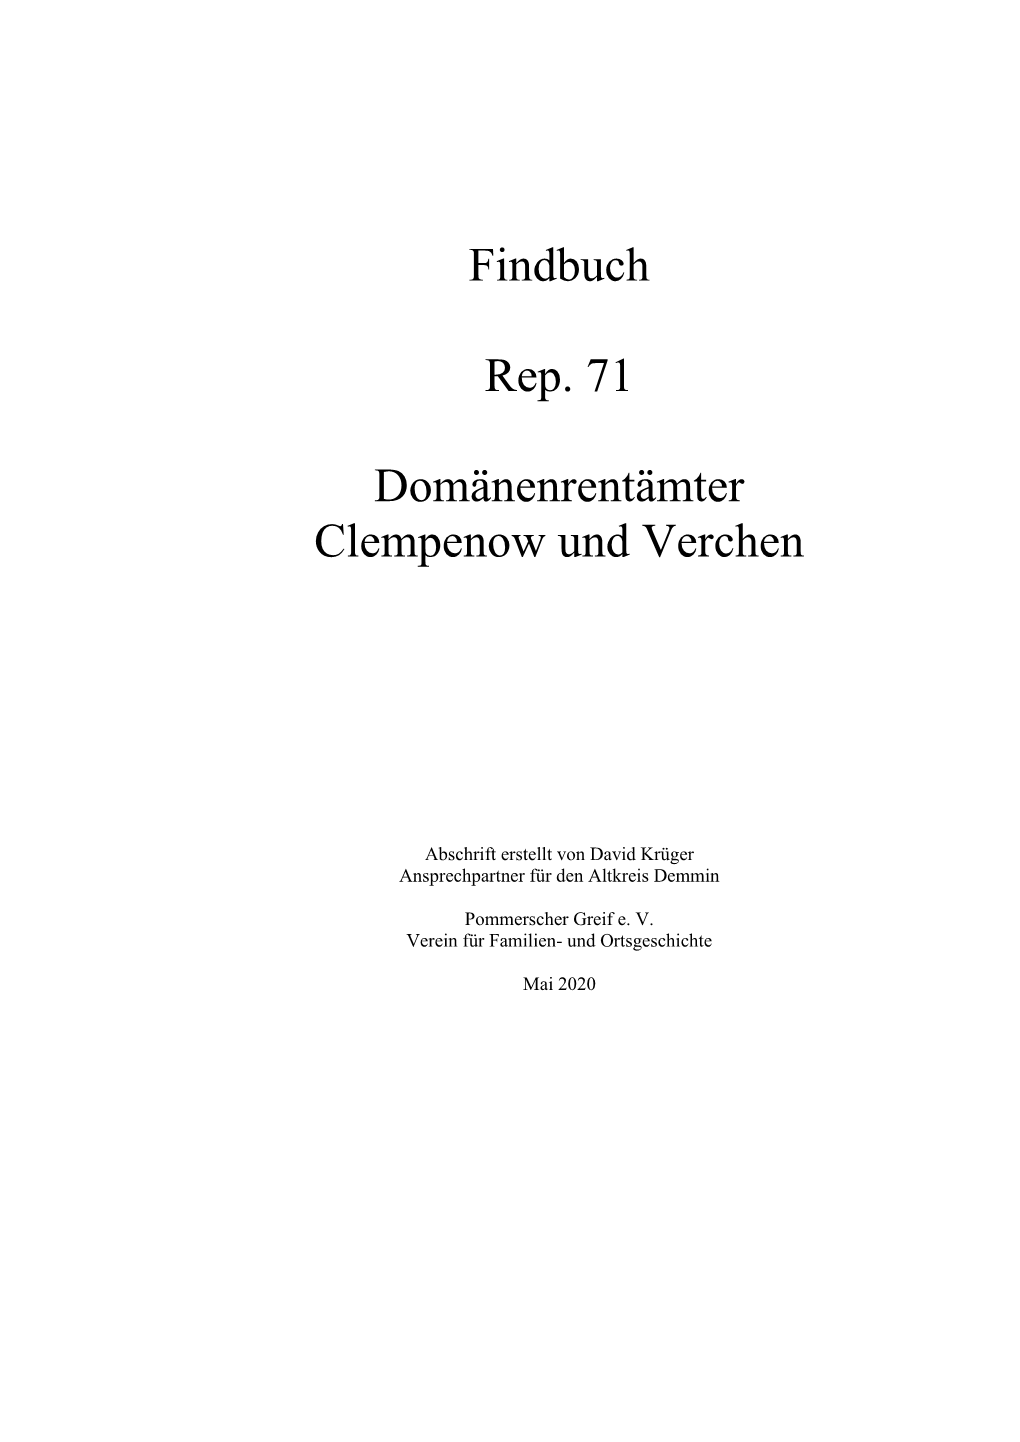 Download Findbuch – Domänenrentämter Clempenow